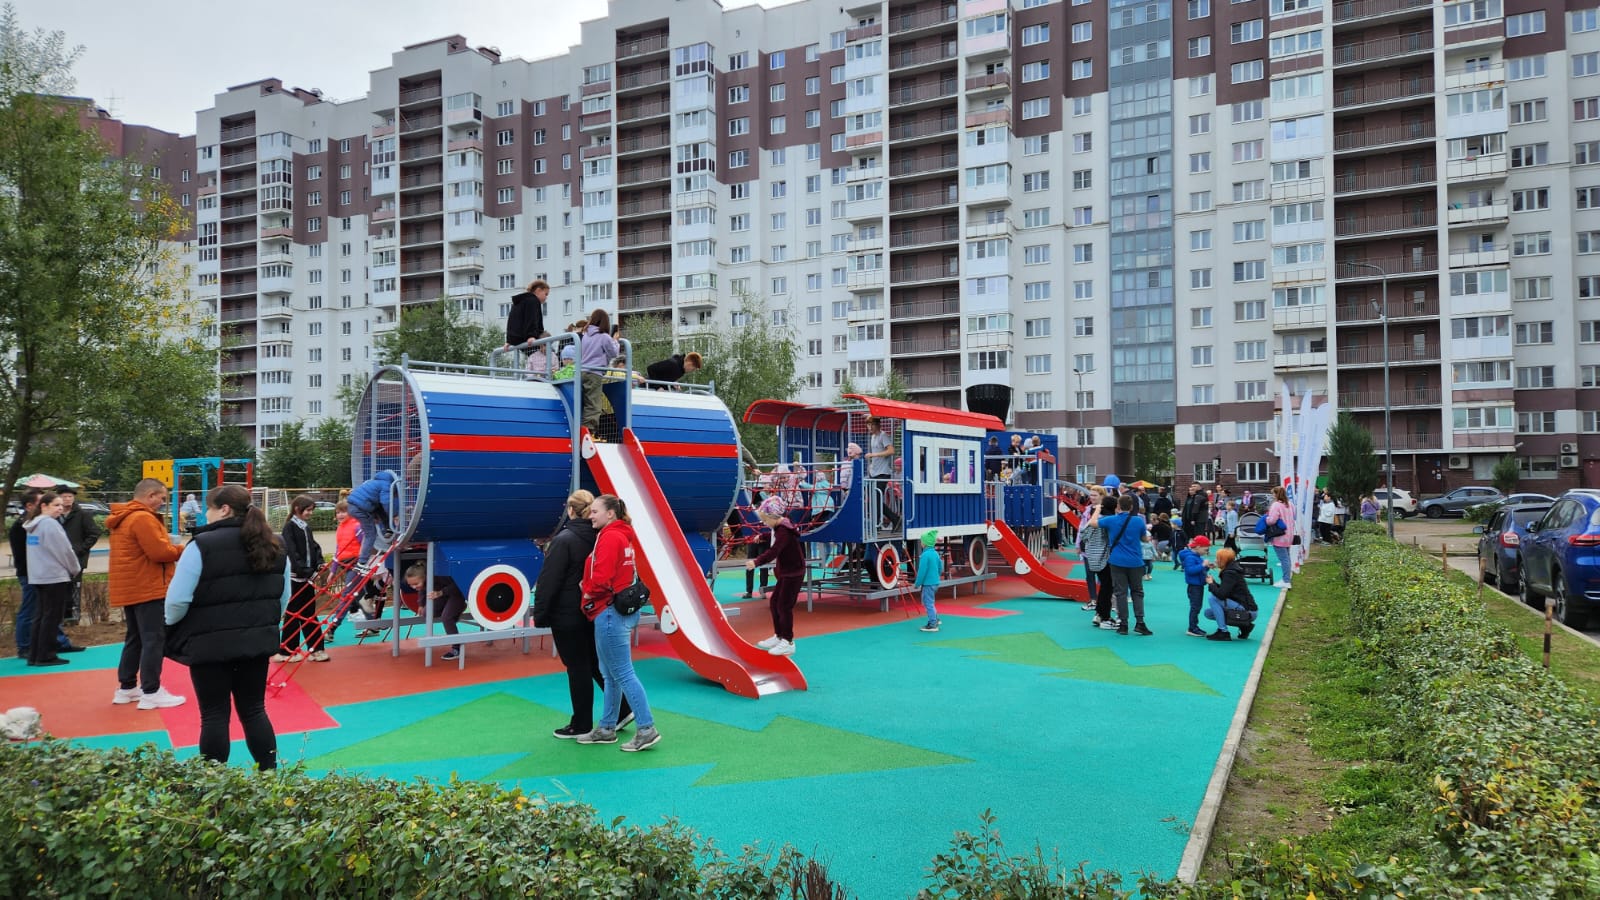 Необычная детская площадка появилась в новом жилом районе города Тихвина